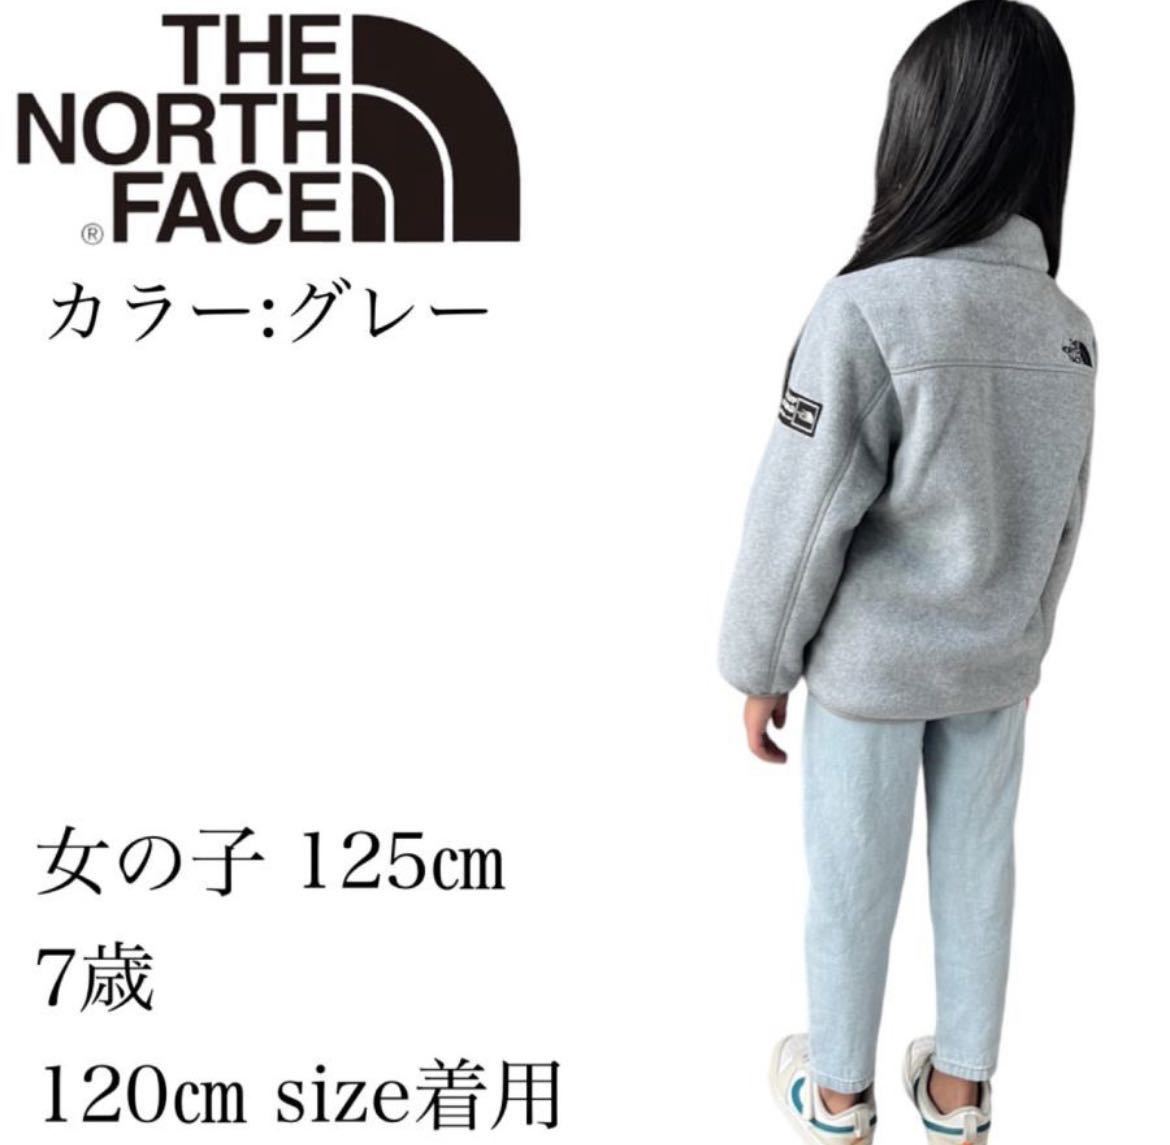  The North Face fleece jacket boa Korea Kids 140.THE NORTH FACE jacket fleece fleece jacket new goods 